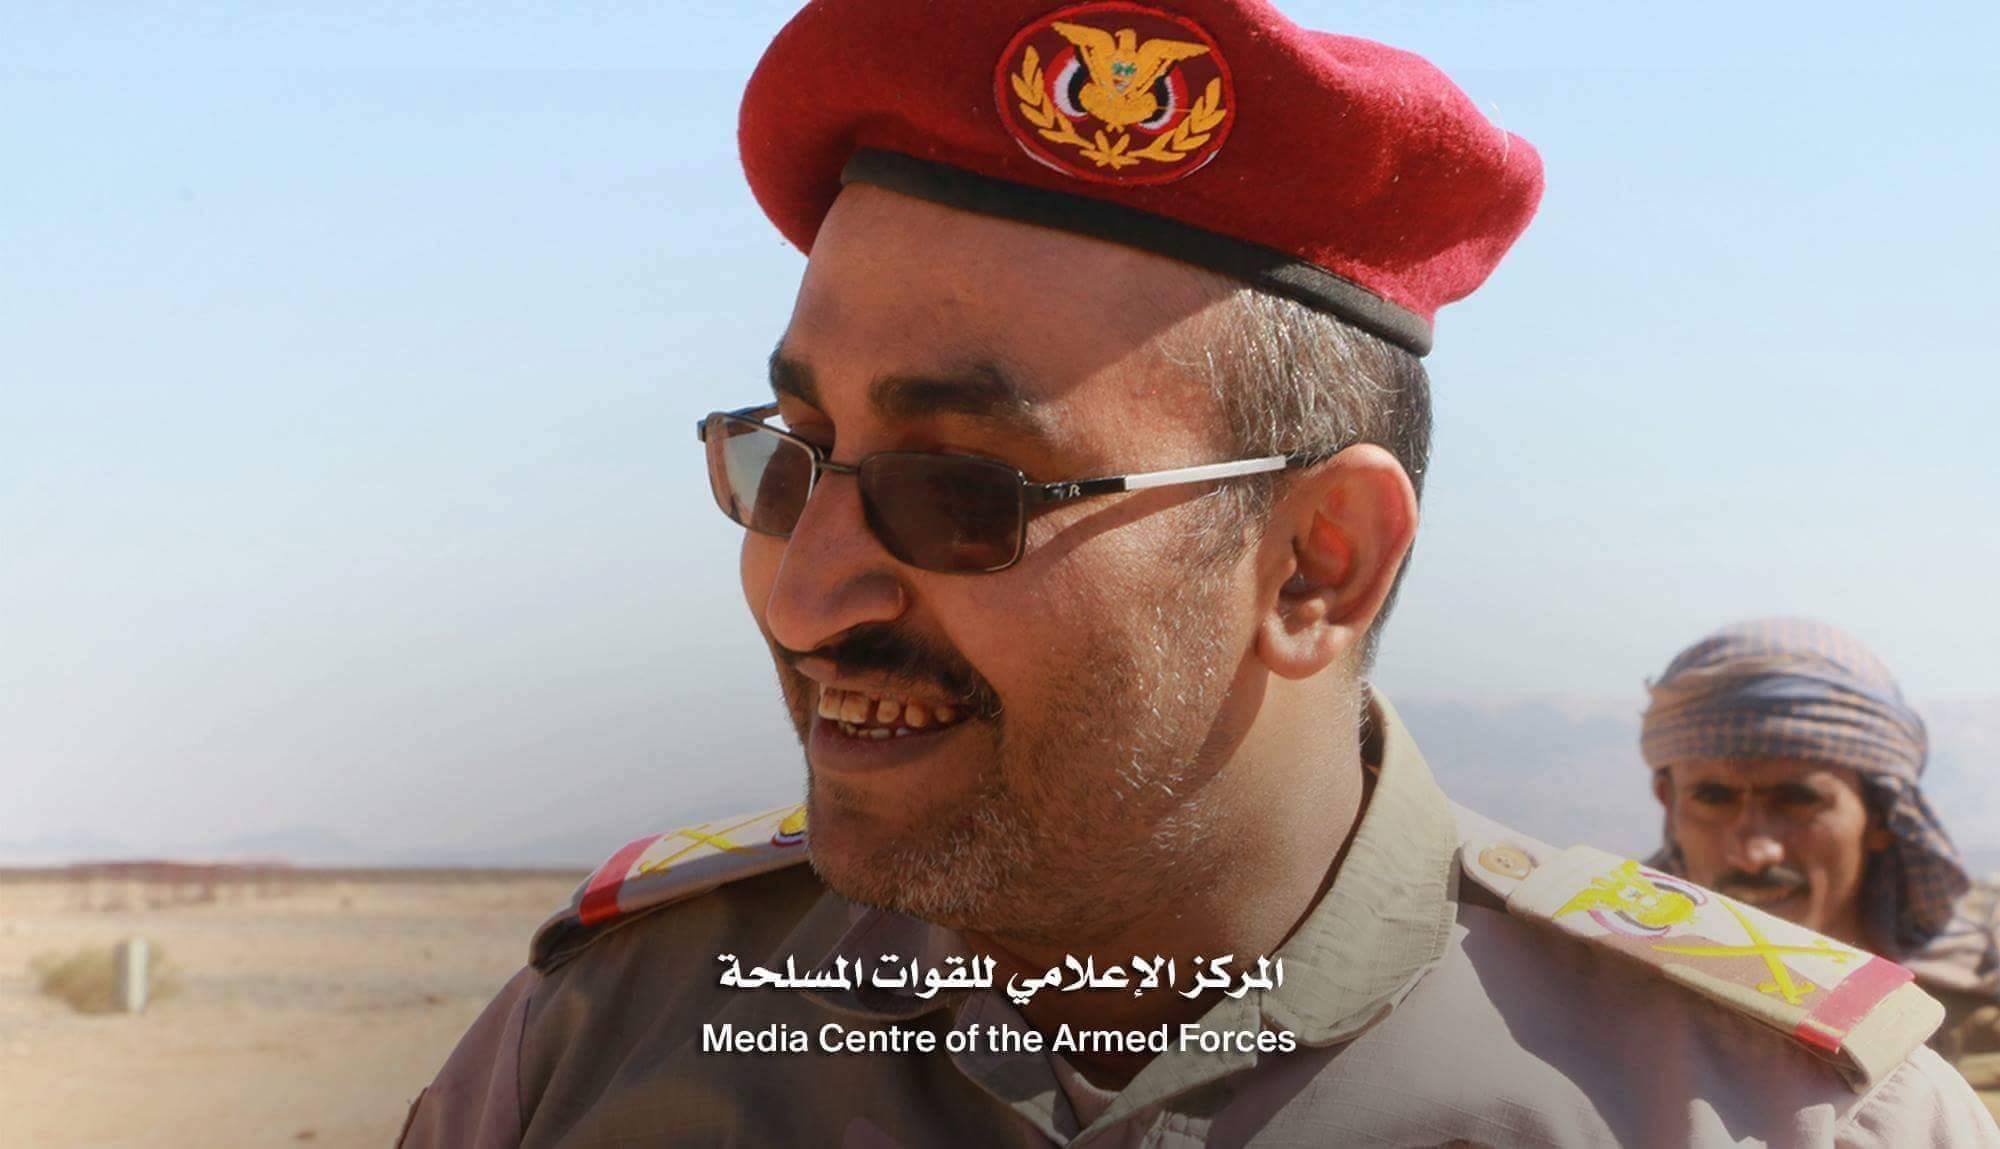 قائد المنطقة العسكرية السابعة يؤكد انهزام المليشيات شرق صنعاء ويشيد بدور المقاومة الشعبية